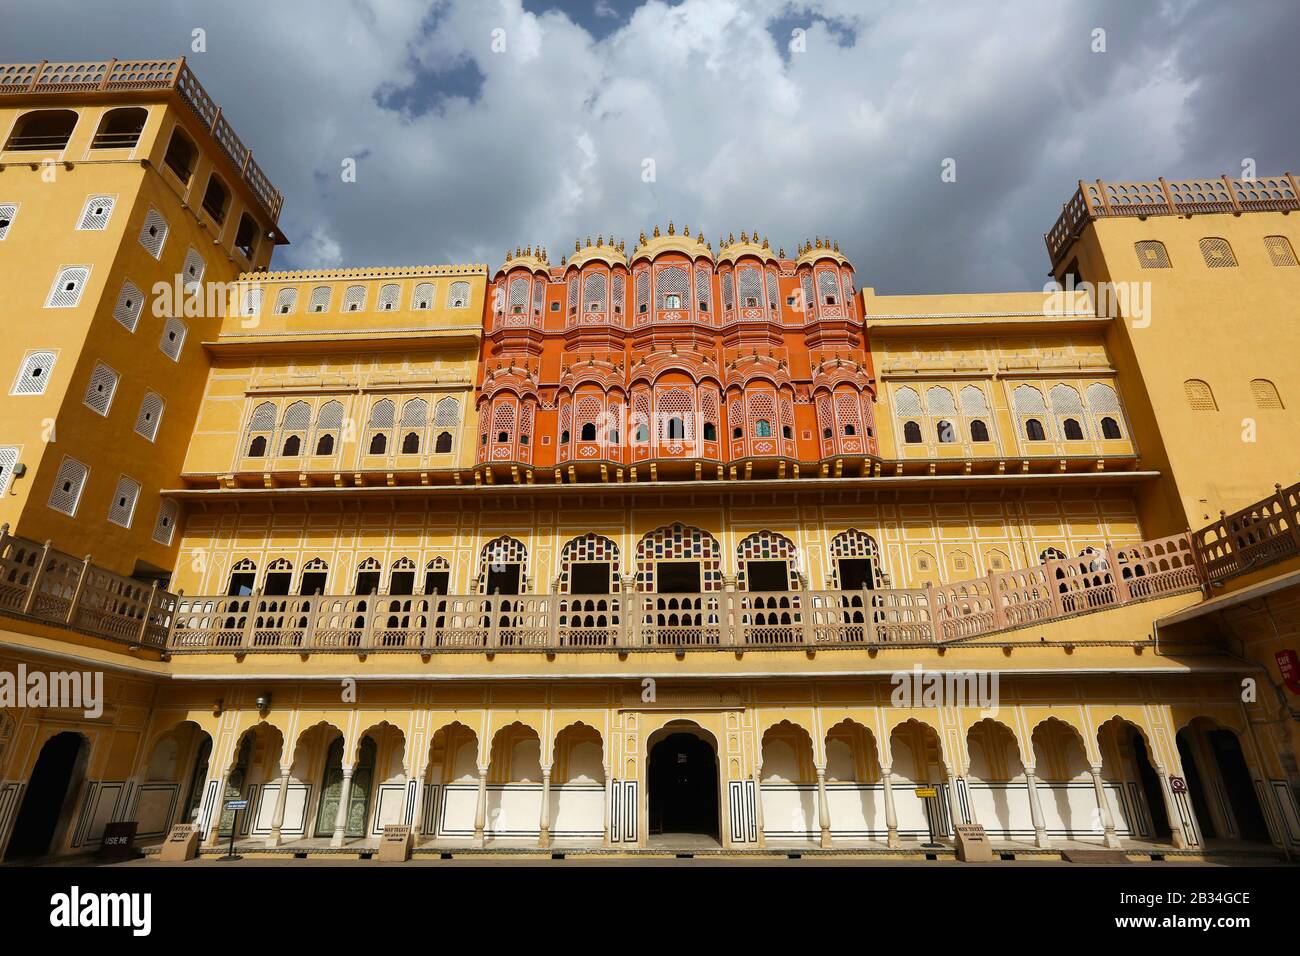 Intérieur du Palais des vents, Hawa Mahal, Jaipur, Rajasthan, Inde Banque D'Images